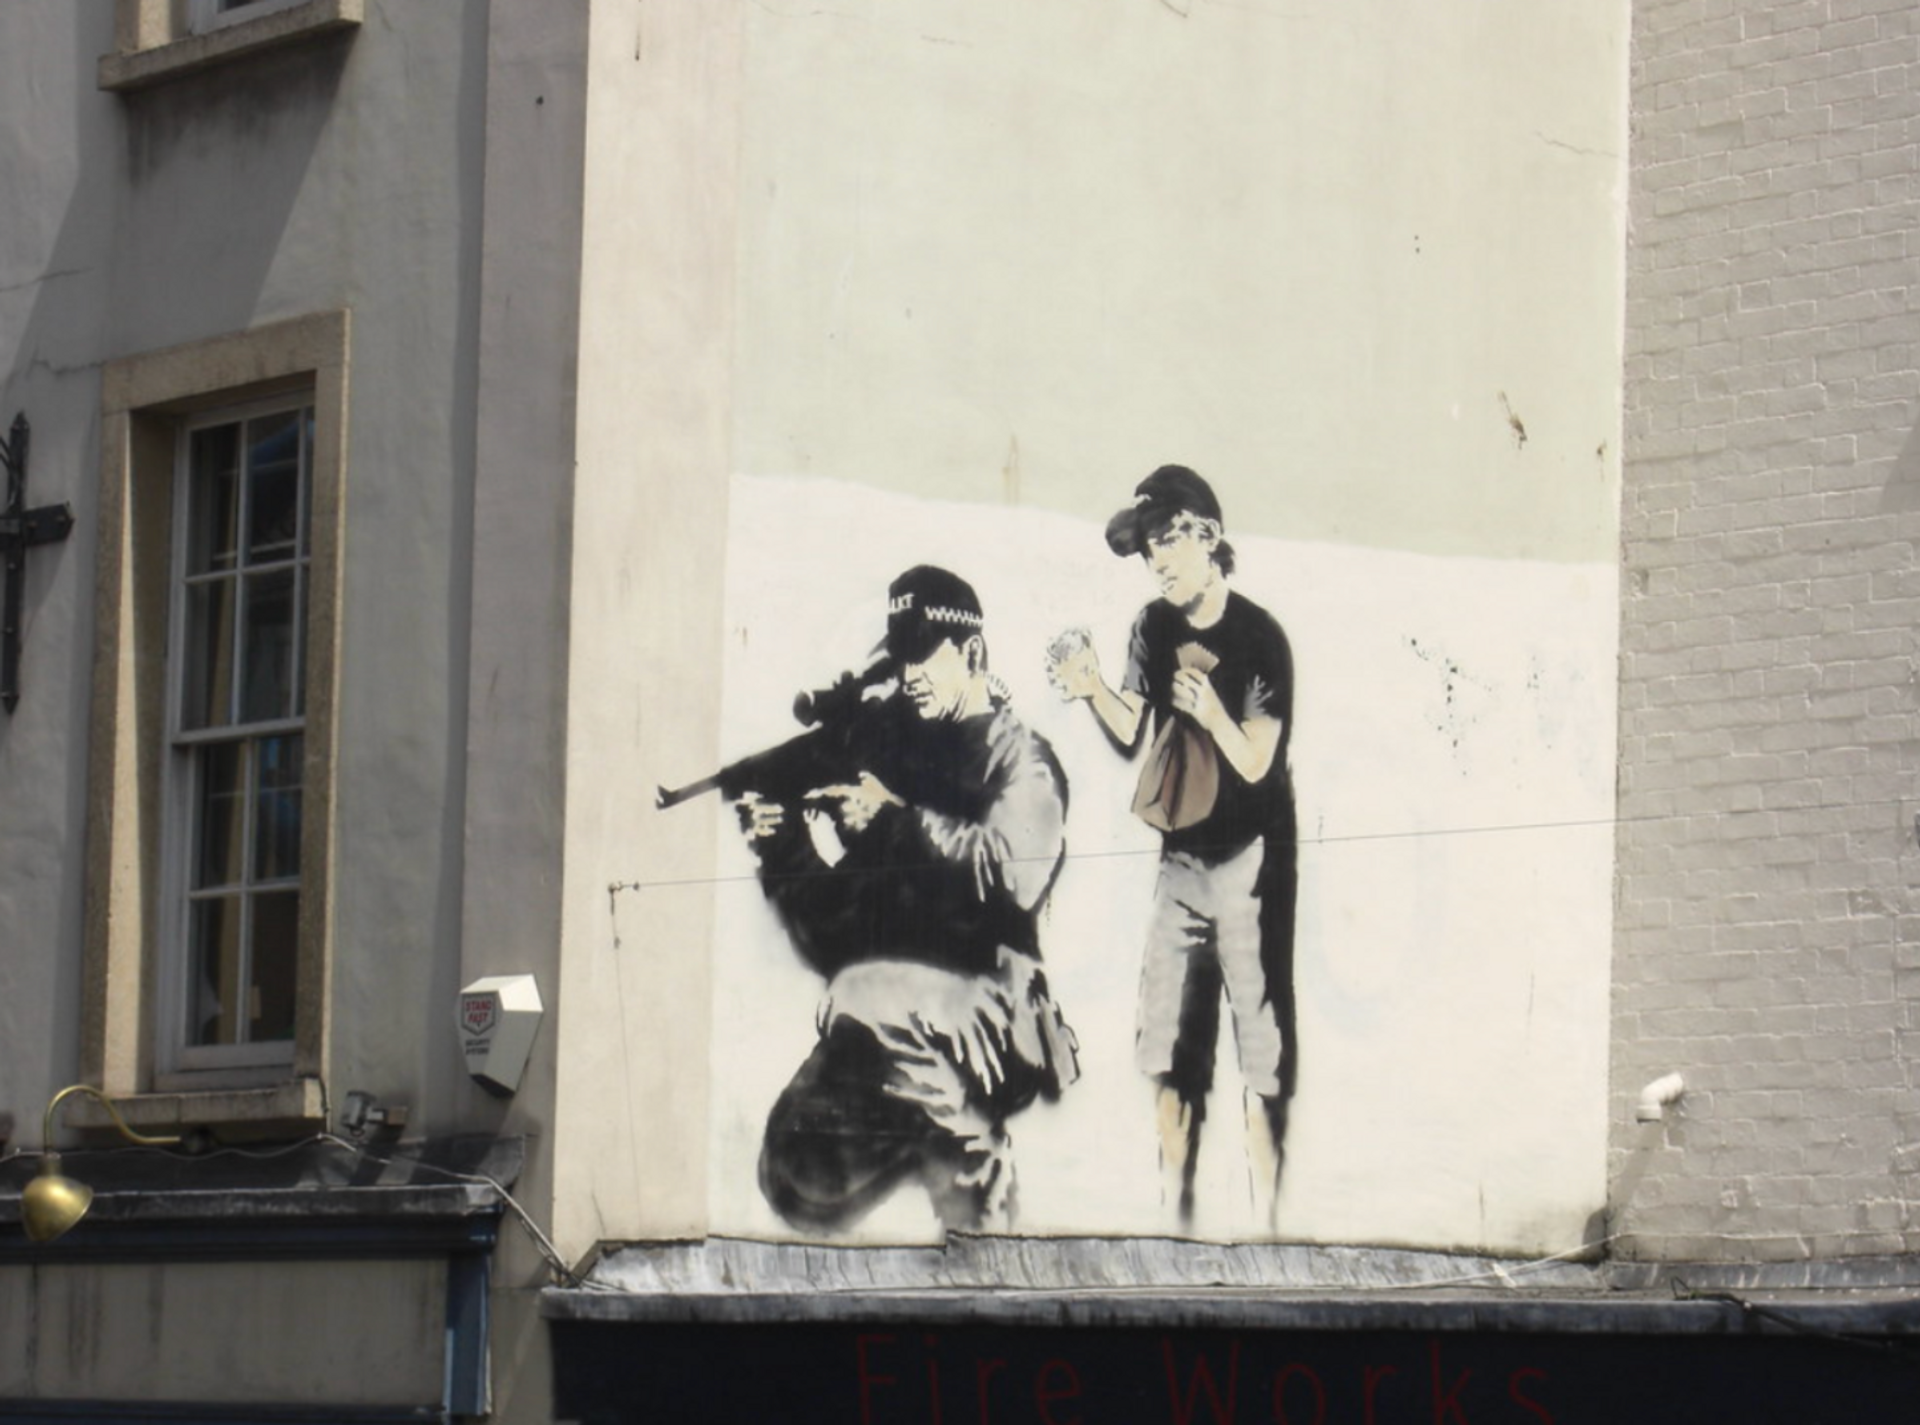 Police Sniper by Banksy